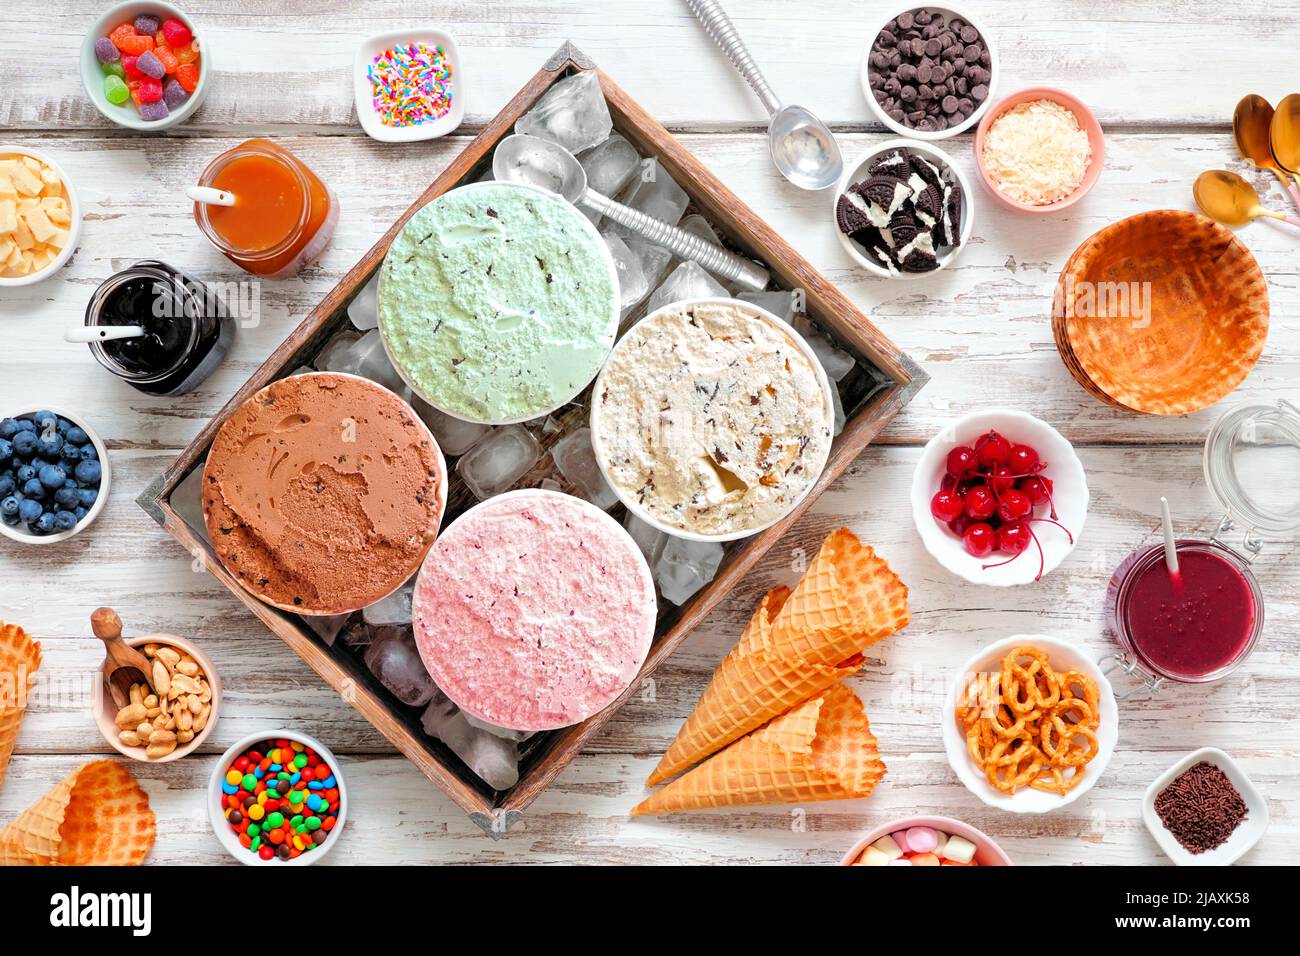 Sommerliches Eisbuffet mit verschiedenen Eisaromen und süßen Belägen. Deckenansicht Tischszene auf einem rustikalen weißen Holzhintergrund. Stockfoto